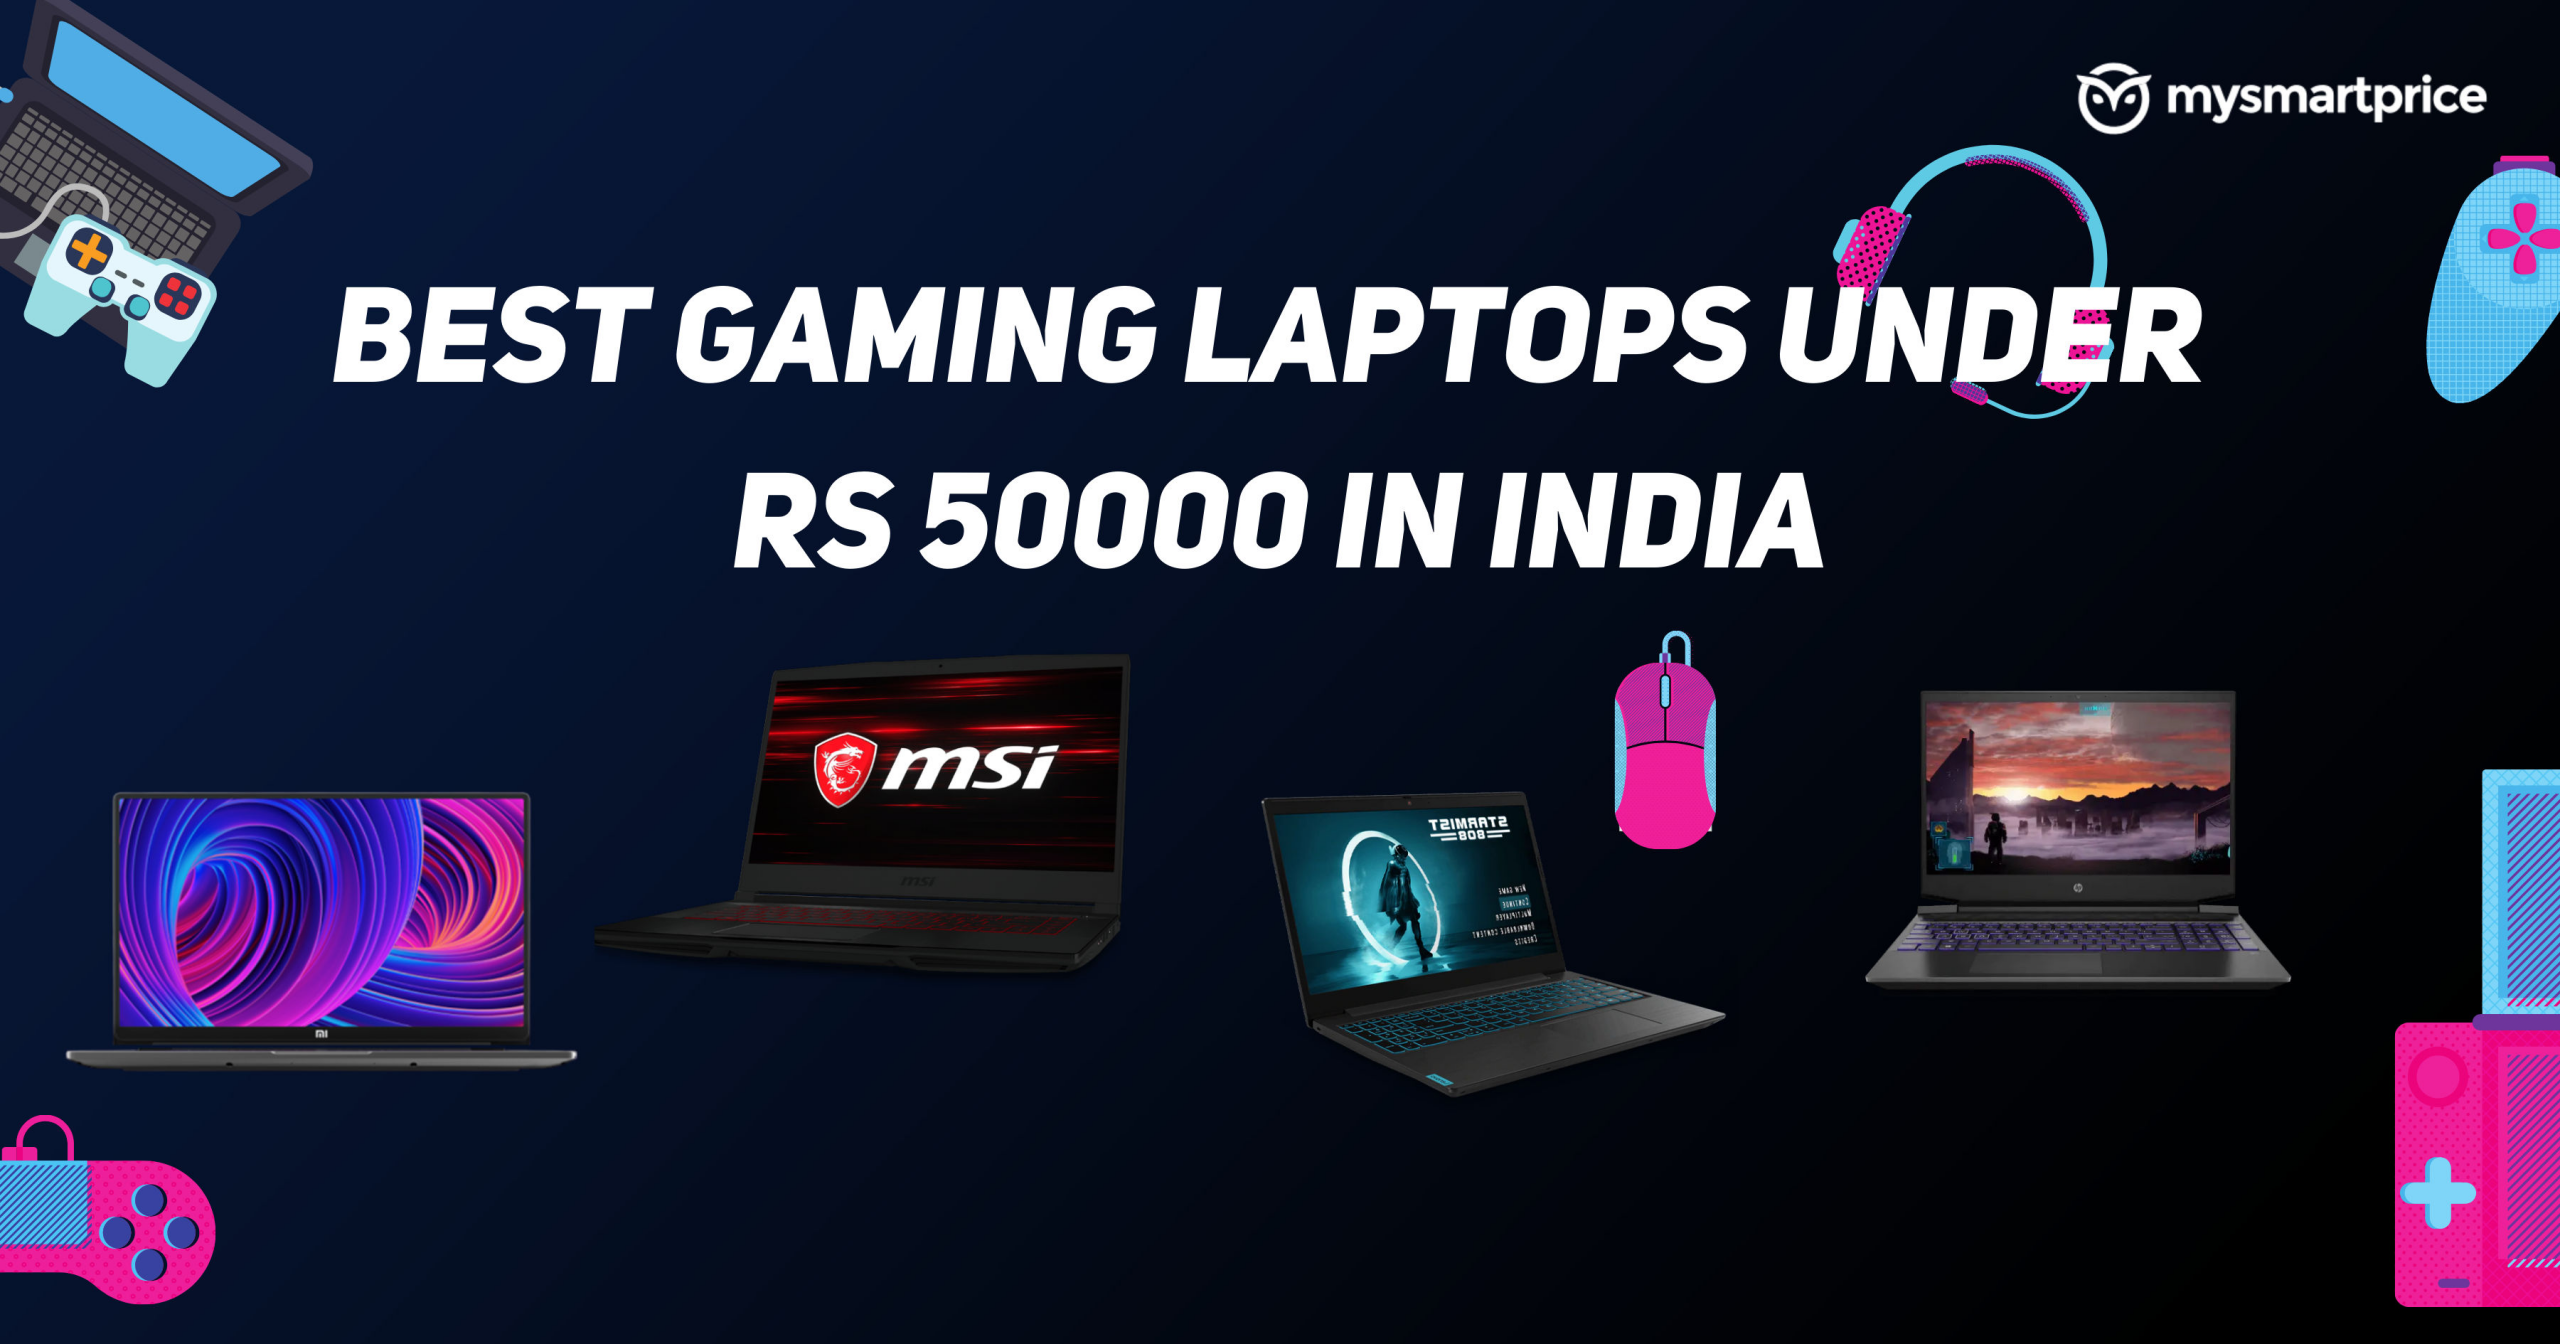 Las mejores computadoras portátiles para juegos por debajo de Rs 50000 en India: Xiaomi Mi Notebook ...